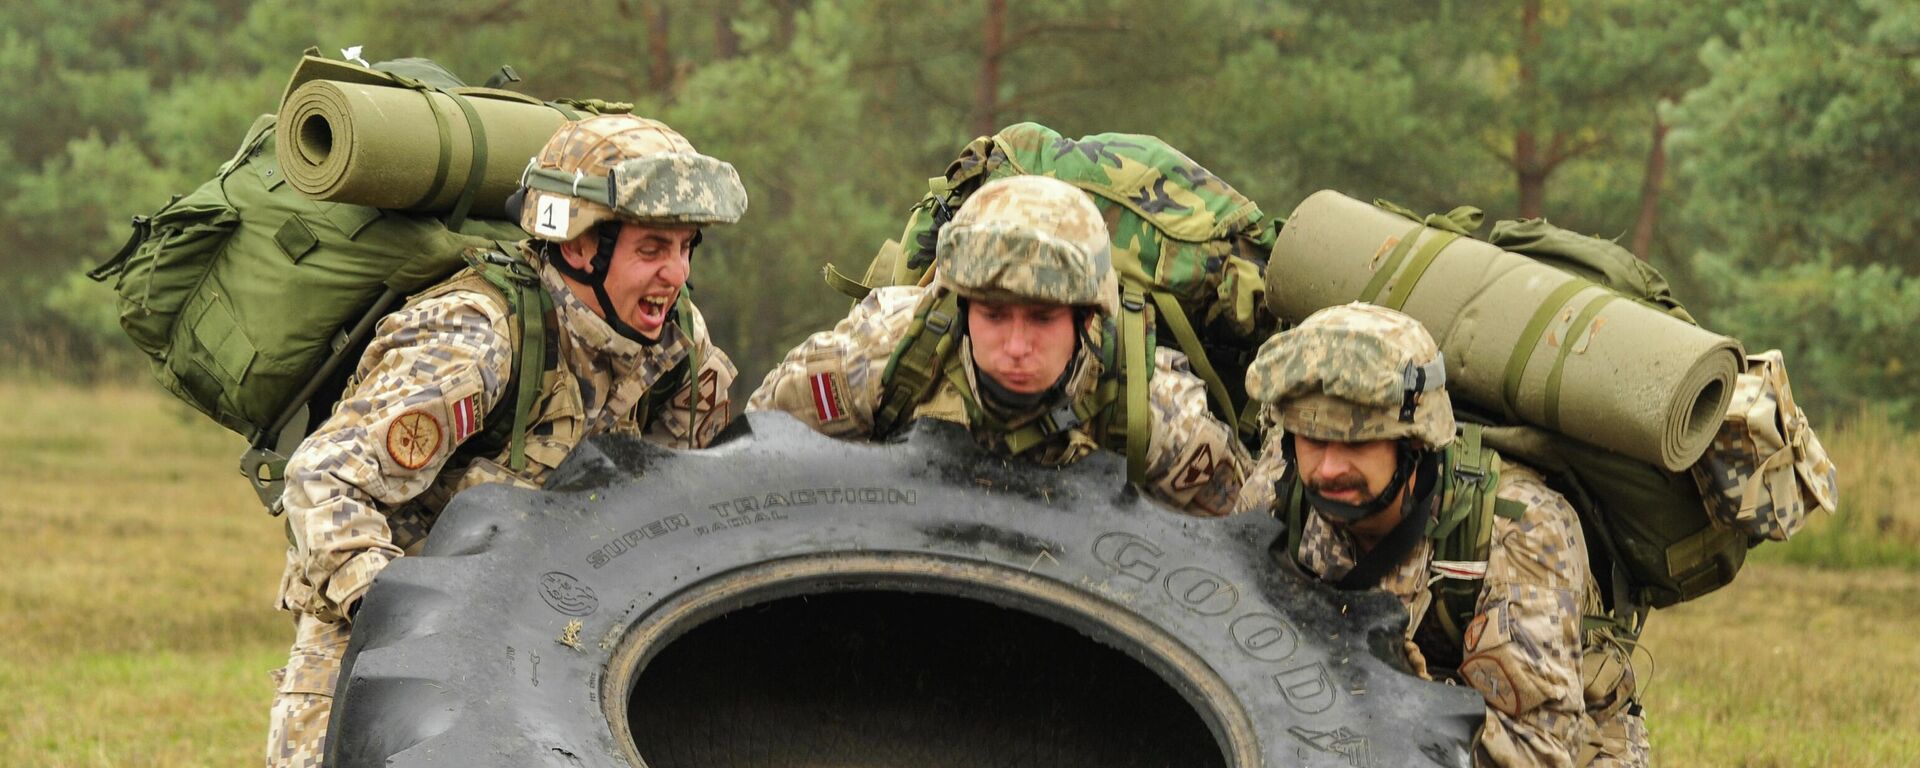 Латвийские военнослужащие во время учений на полигоне Графенвор, Бавария, Германия, 19 октября 2015 года  - Sputnik Латвия, 1920, 30.08.2022